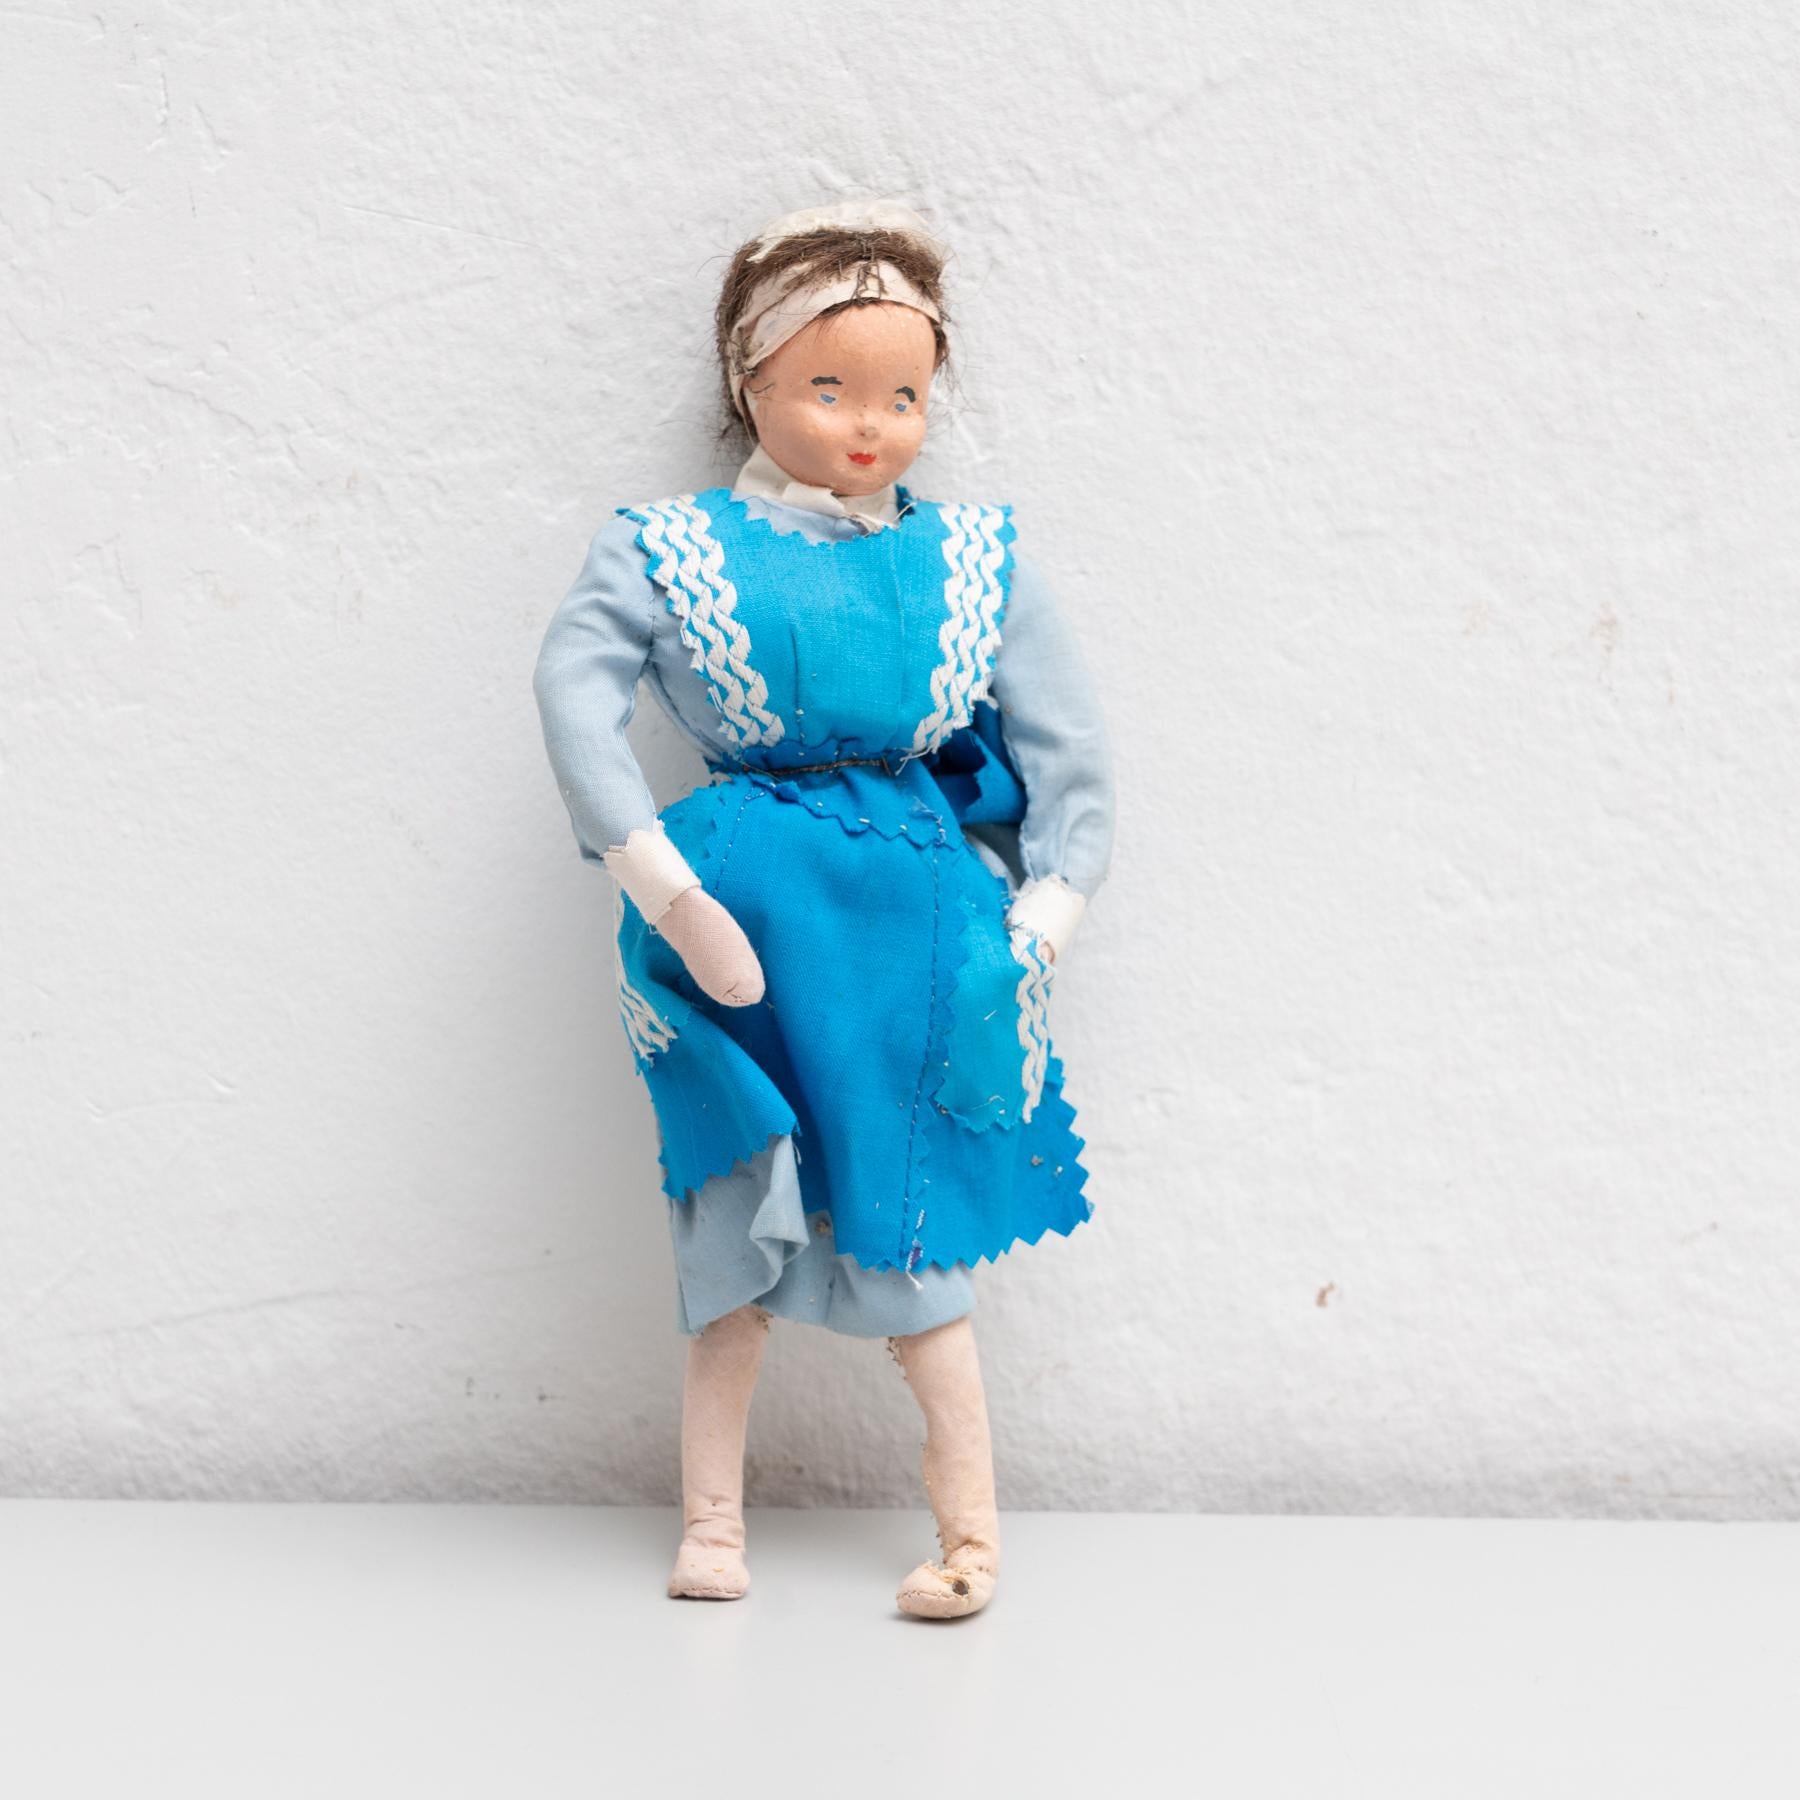 Antique poupée de chiffon espagnole traditionnelle du début du 20e siècle, peinte à la main et habillée d'un costume de servante traditionnel. 

Fabriqué vers 1920 en Espagne.

En état d'origine, avec une usure mineure conforme à l'âge et à